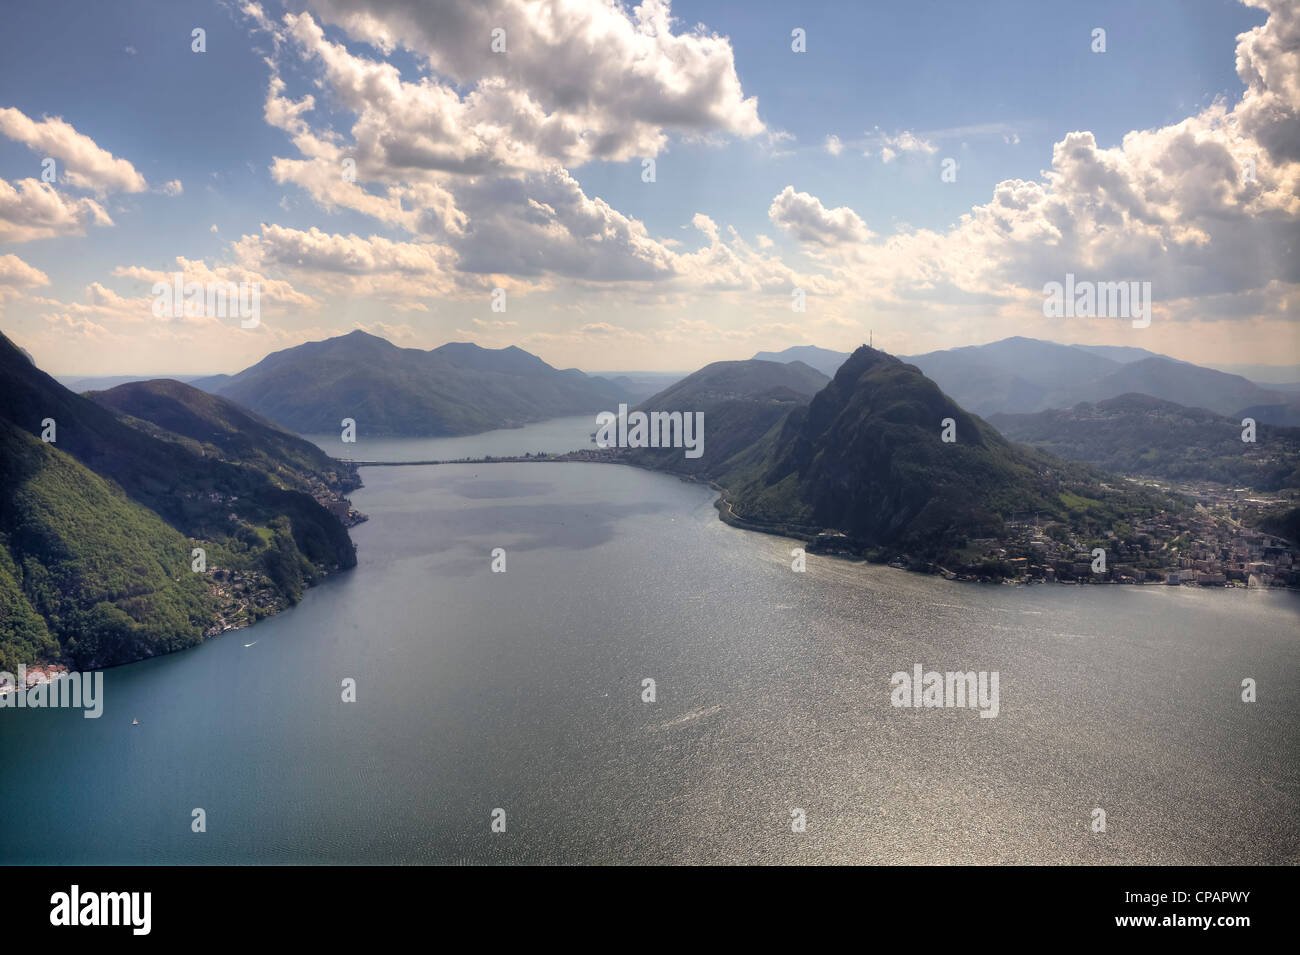 Monte Bre, Lugano, Ticino, Switzerland Stock Photo